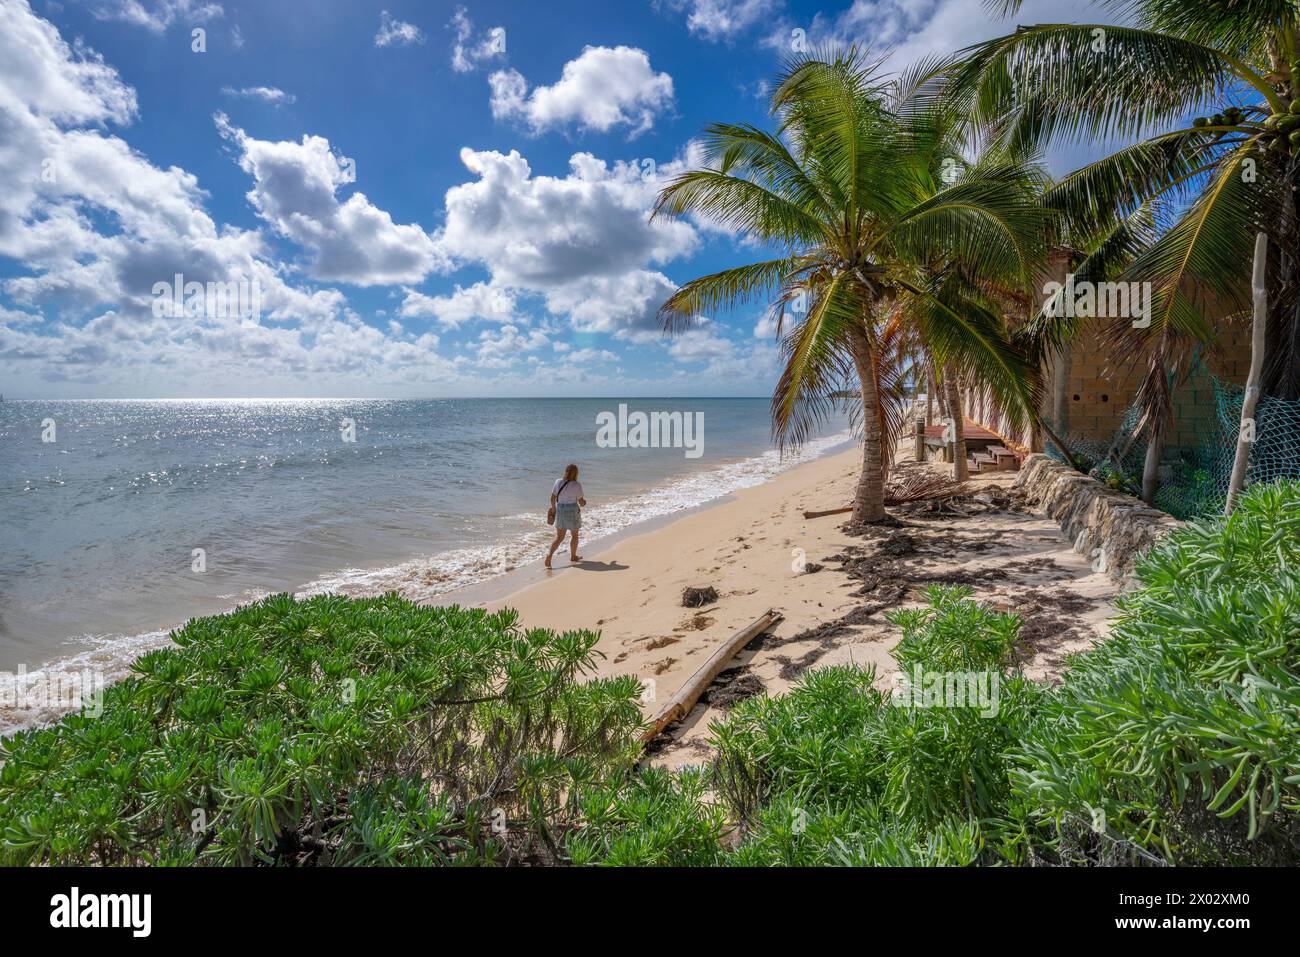 Blick auf eine Frau, die am Strand in der Nähe von Puerto Morelos, Karibikküste, Yucatan Halbinsel, Mexiko, Nordamerika spaziert Stockfoto